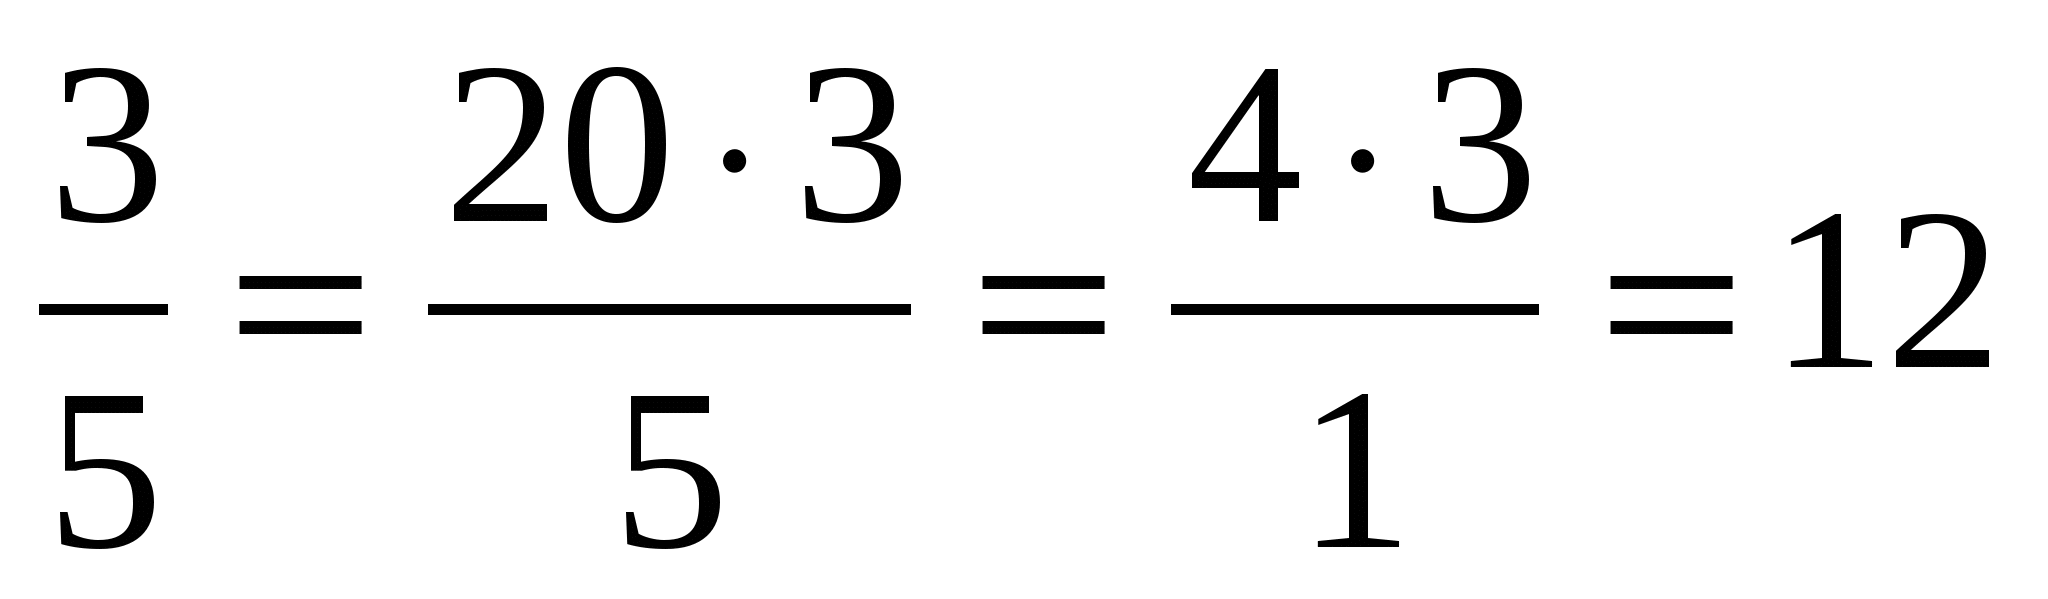 Урок математики в 6 классе Задачи на совместную работу